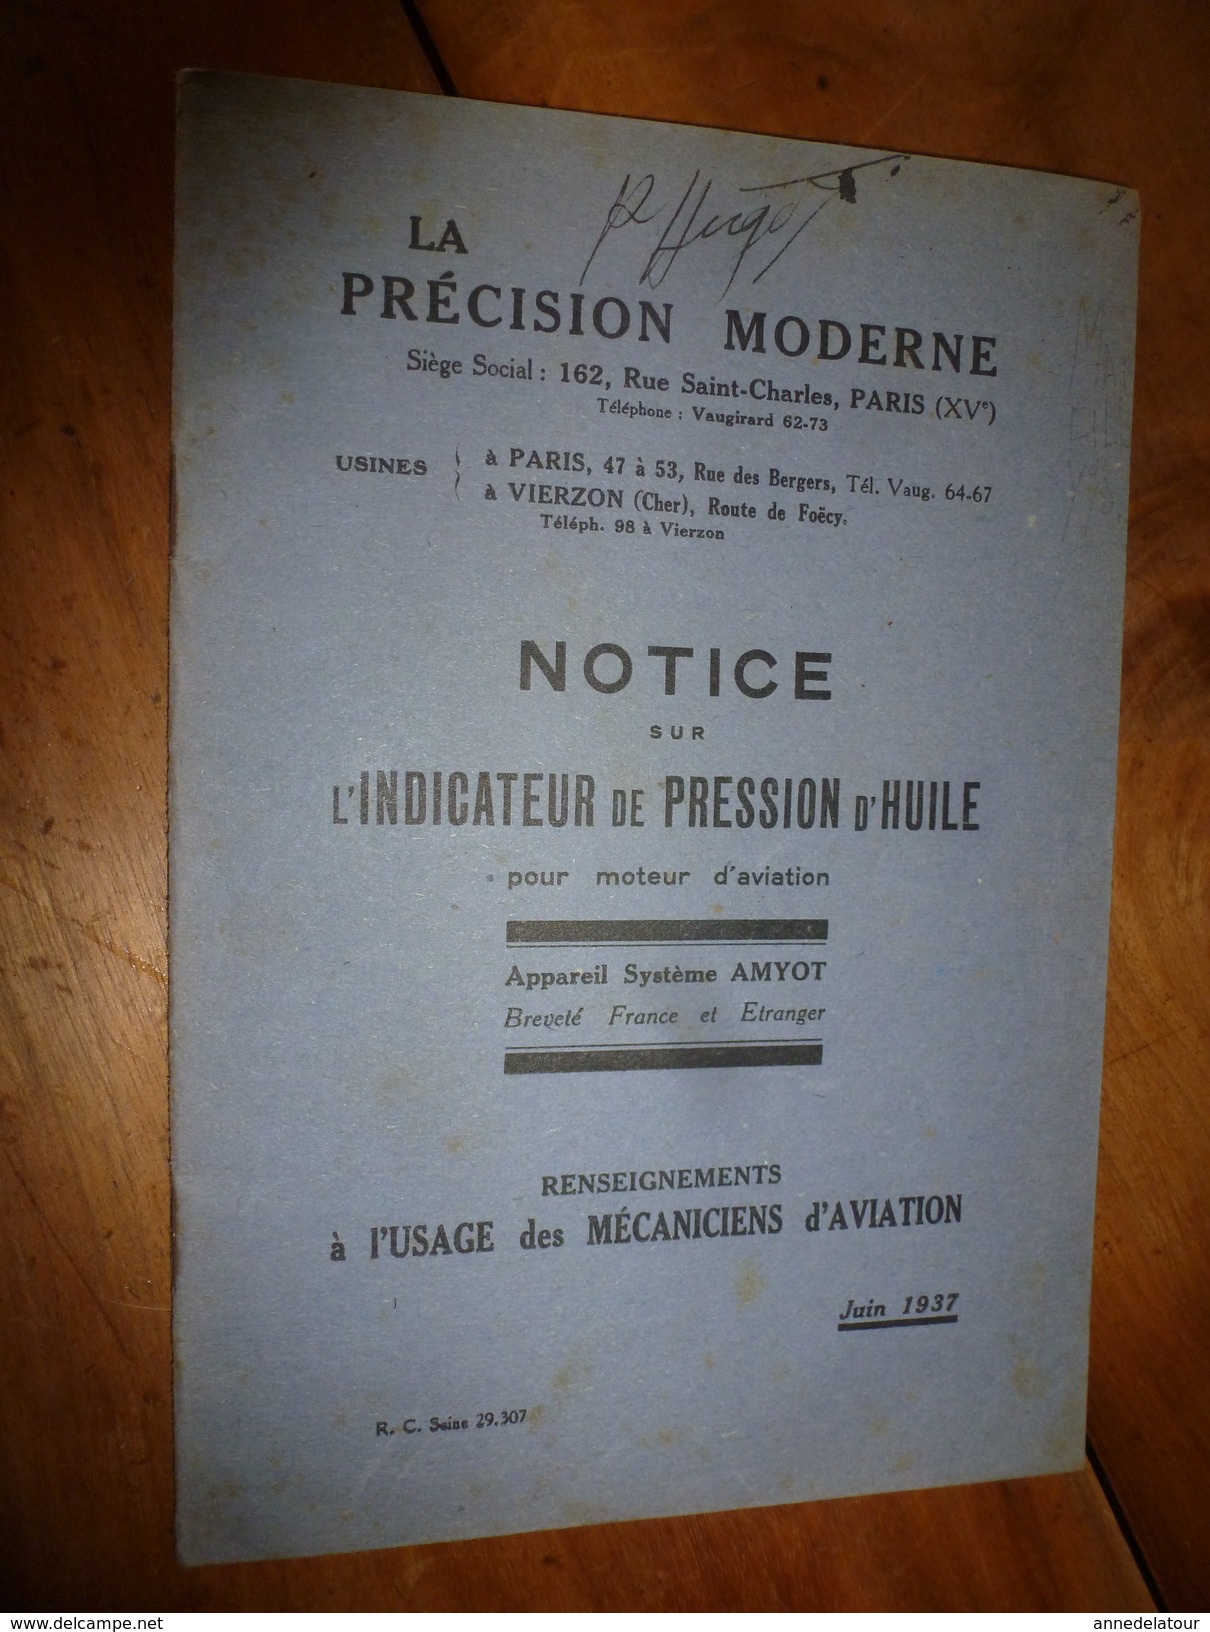 1937 Notice Indicateur De Pression D'huile AMYOT Sur Moteur D'avion, à L'usage Des Mécaniciens De L'aviation - AeroAirplanes